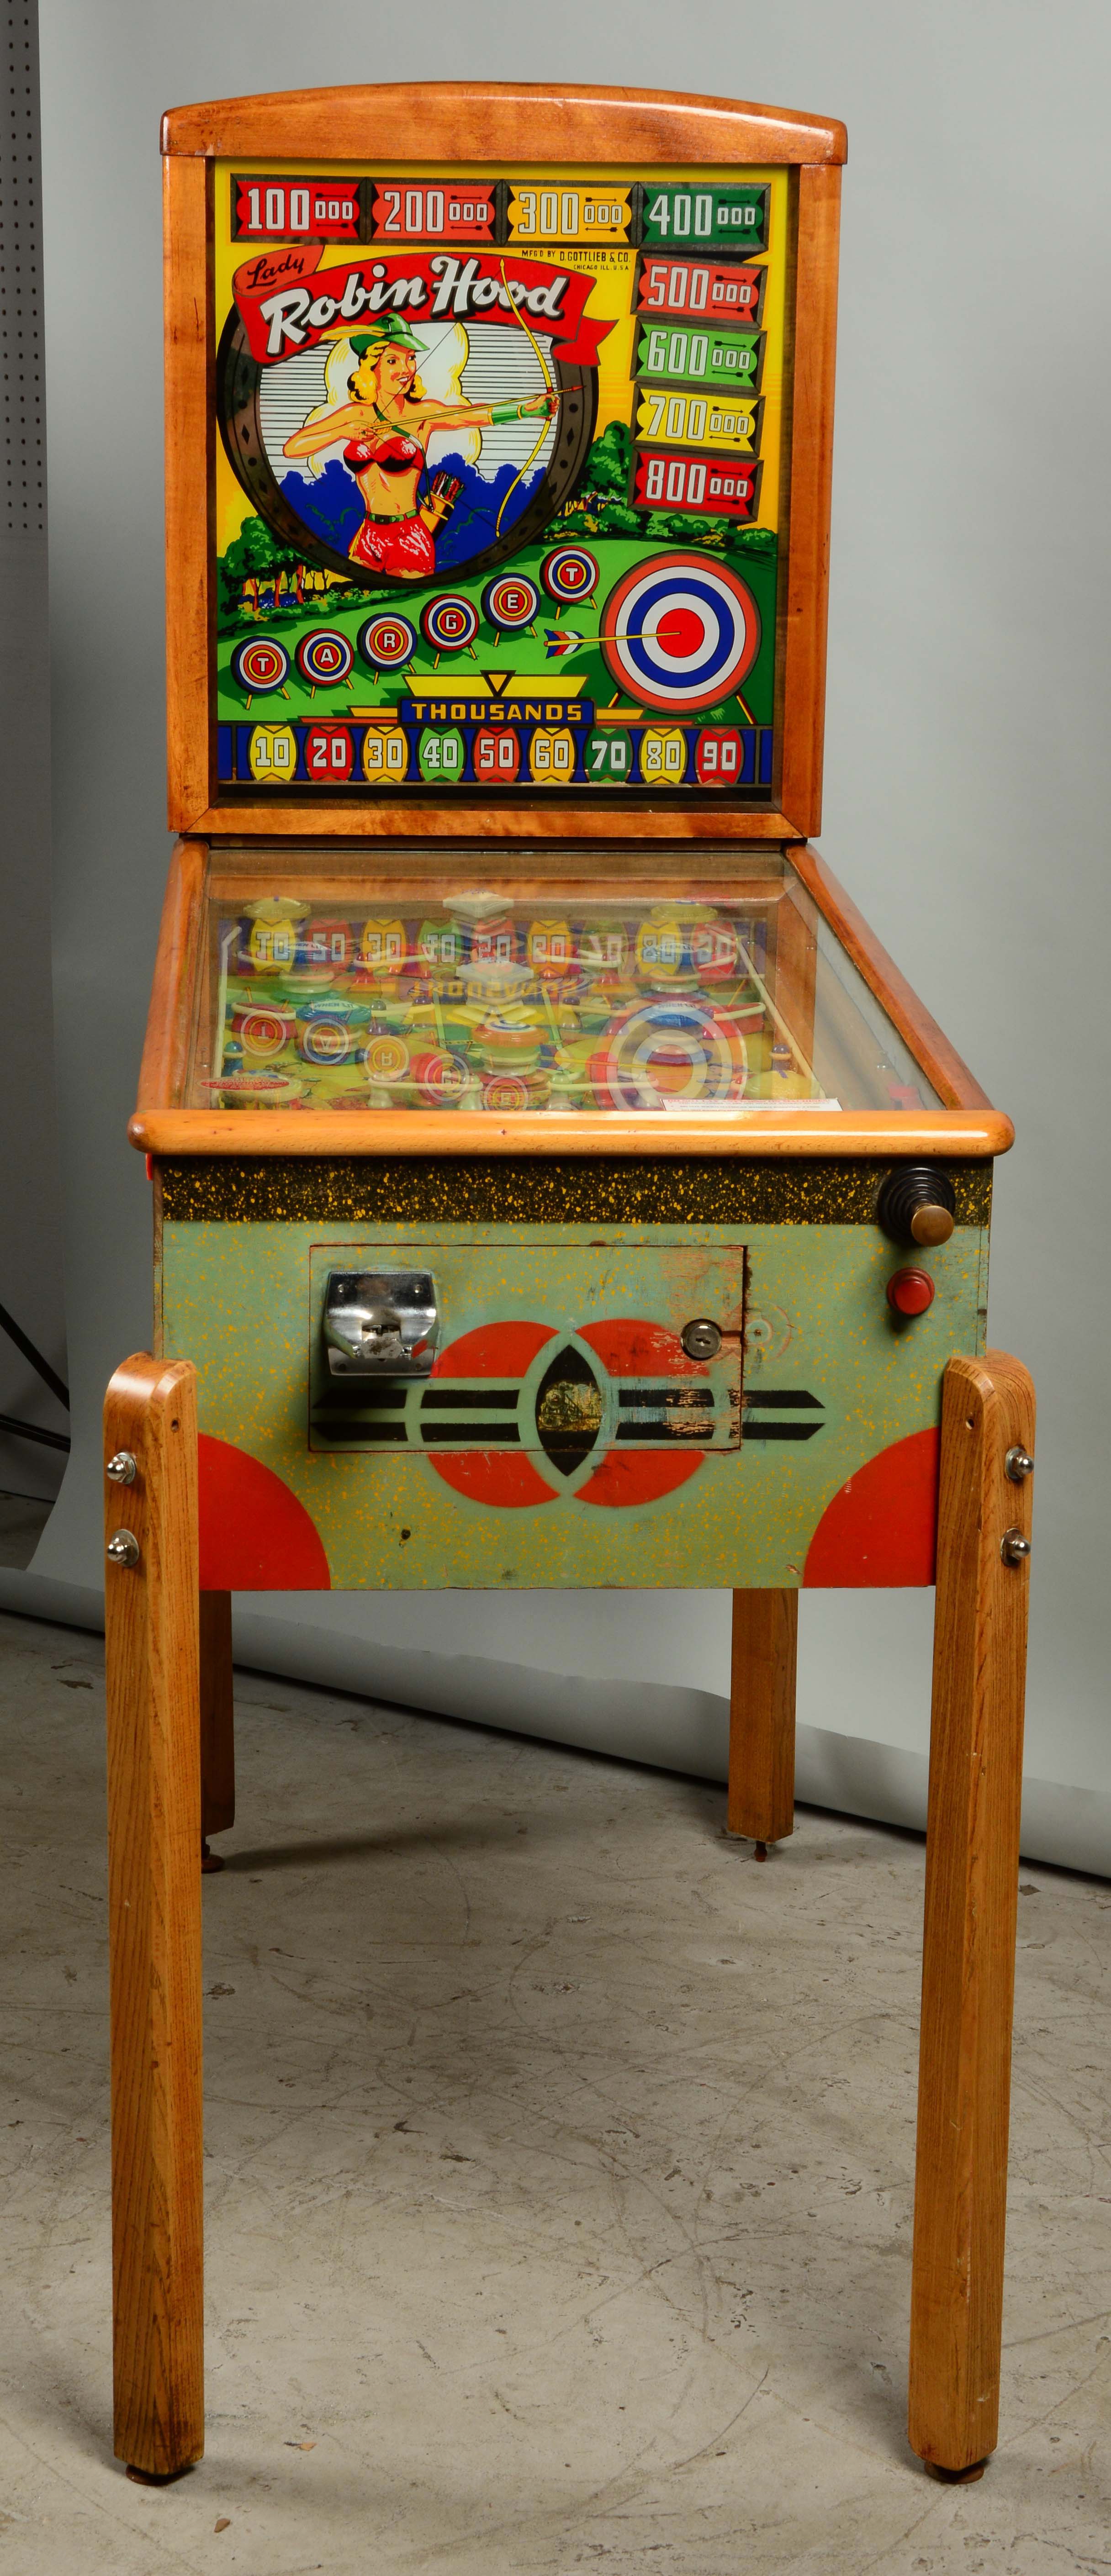 lady robin hood pinball machine